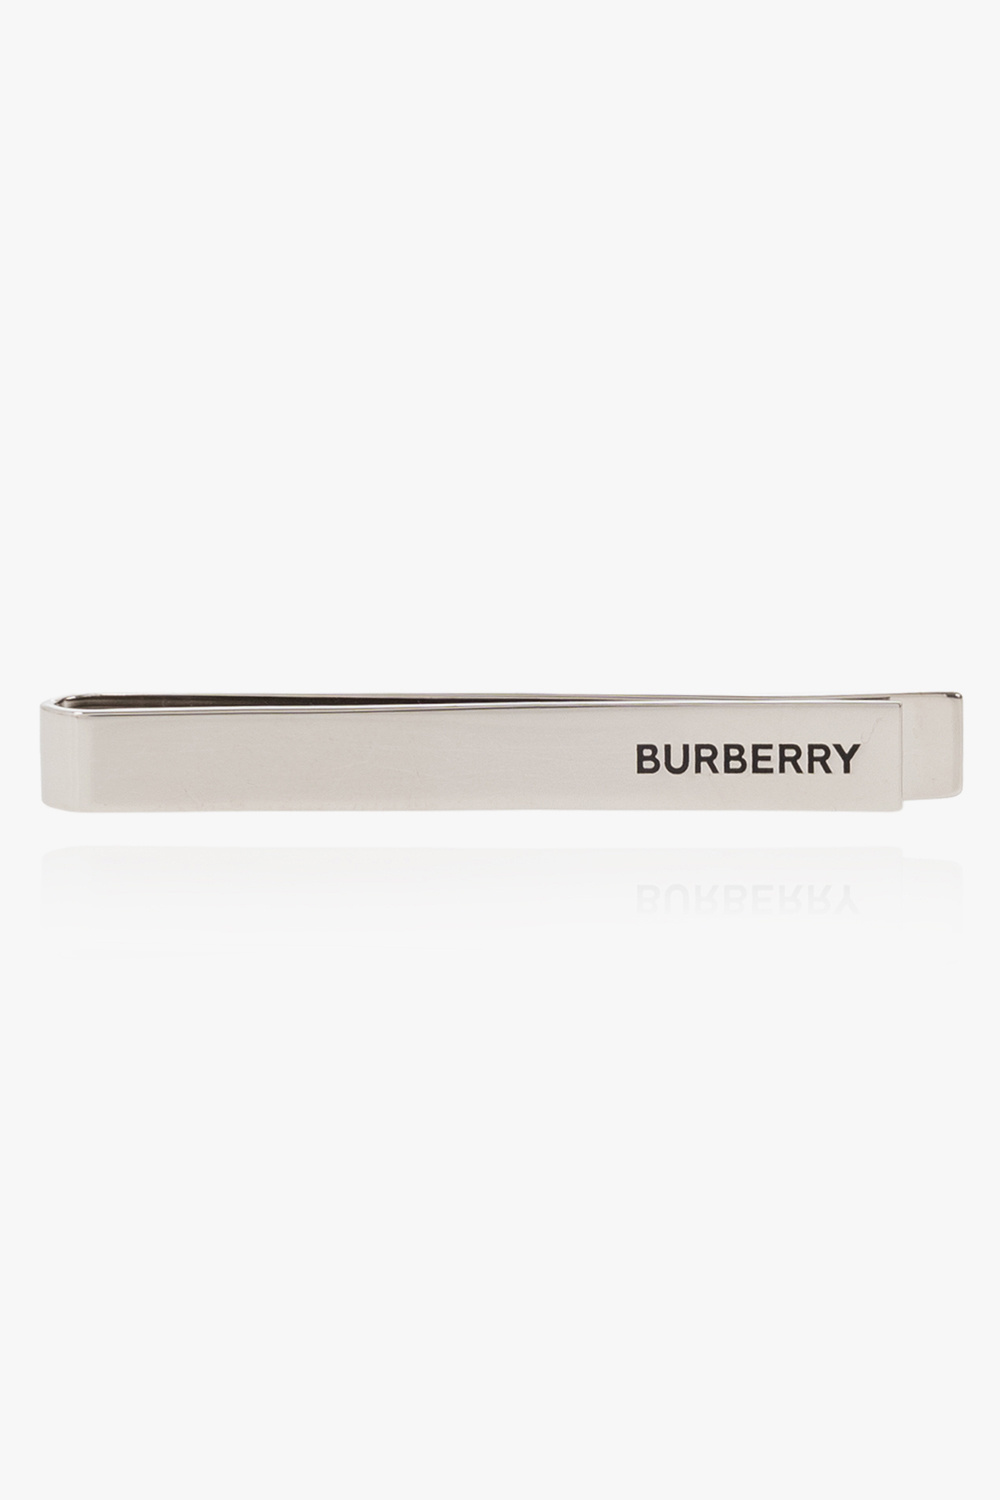 Burberry logo tie clip - Burberry - Men